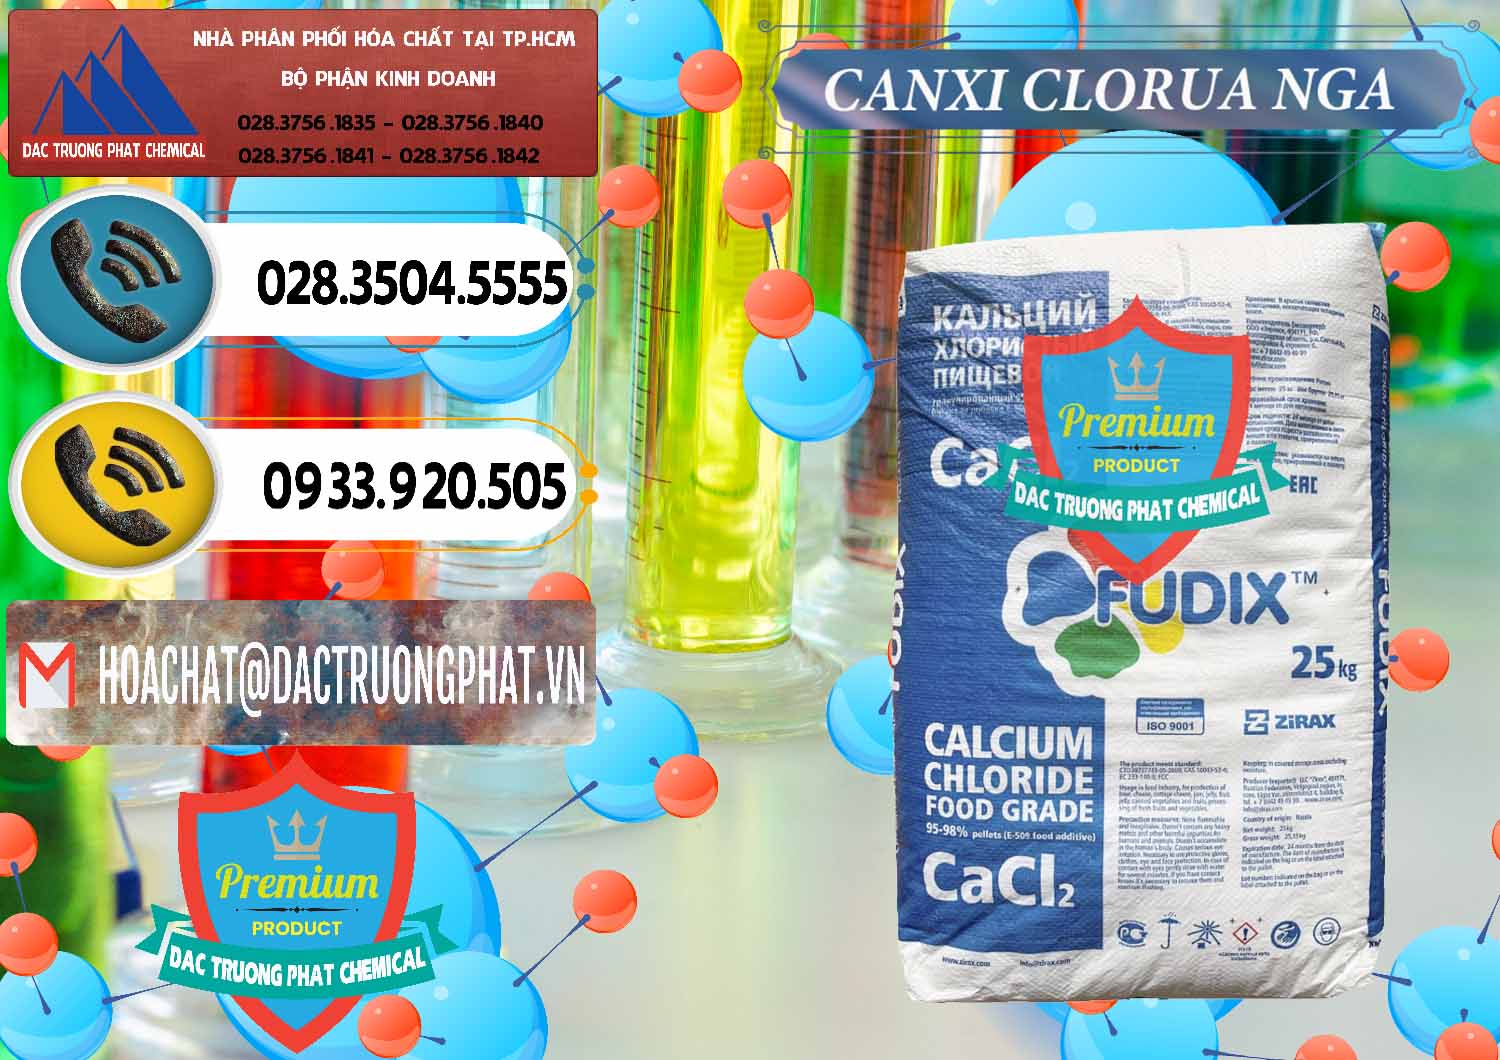 Nơi cung ứng - bán CaCl2 – Canxi Clorua Nga Russia - 0430 - Cty chuyên cung cấp - kinh doanh hóa chất tại TP.HCM - hoachatdetnhuom.vn